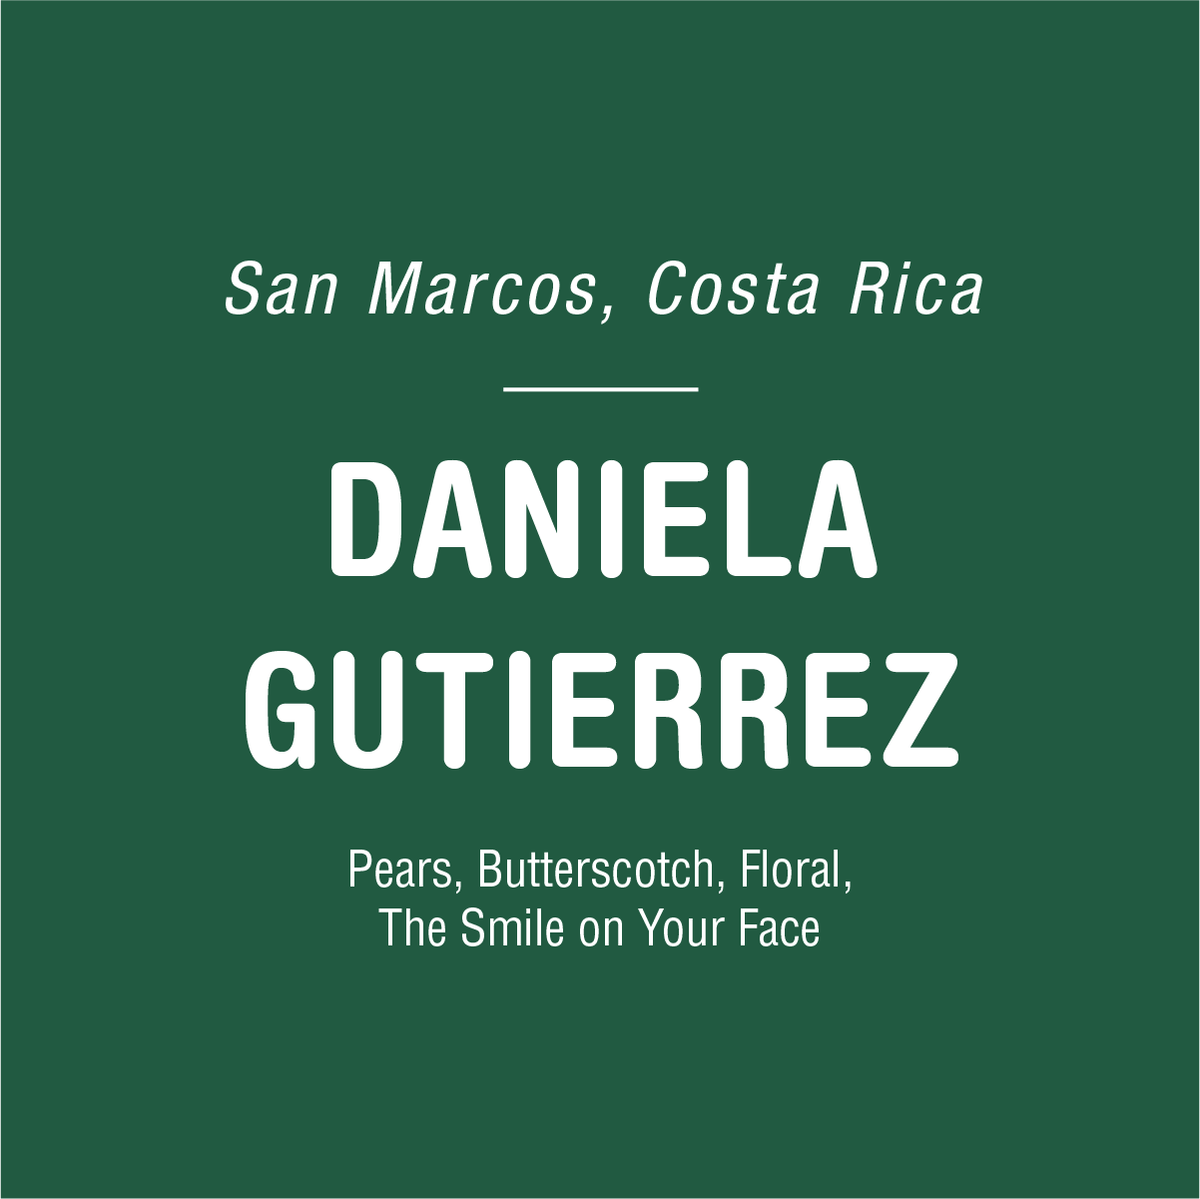 Daniela Gutierrez - Costa Rica